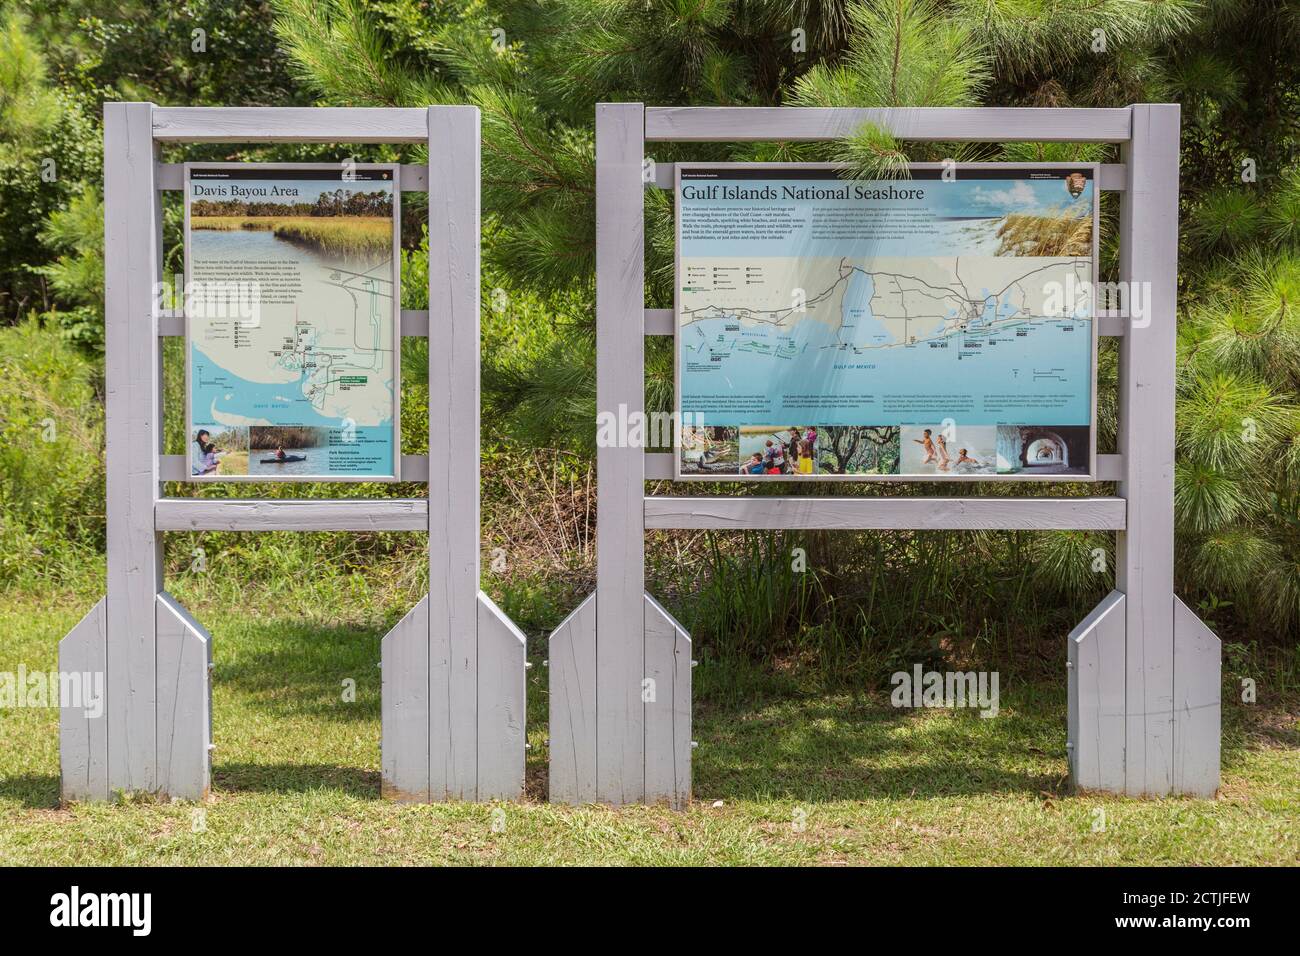 Carte et répertoire au centre d'accueil de la région de Davis Bayou de Gulf Islands National Seashore à Ocean Springs, Mississippi Banque D'Images